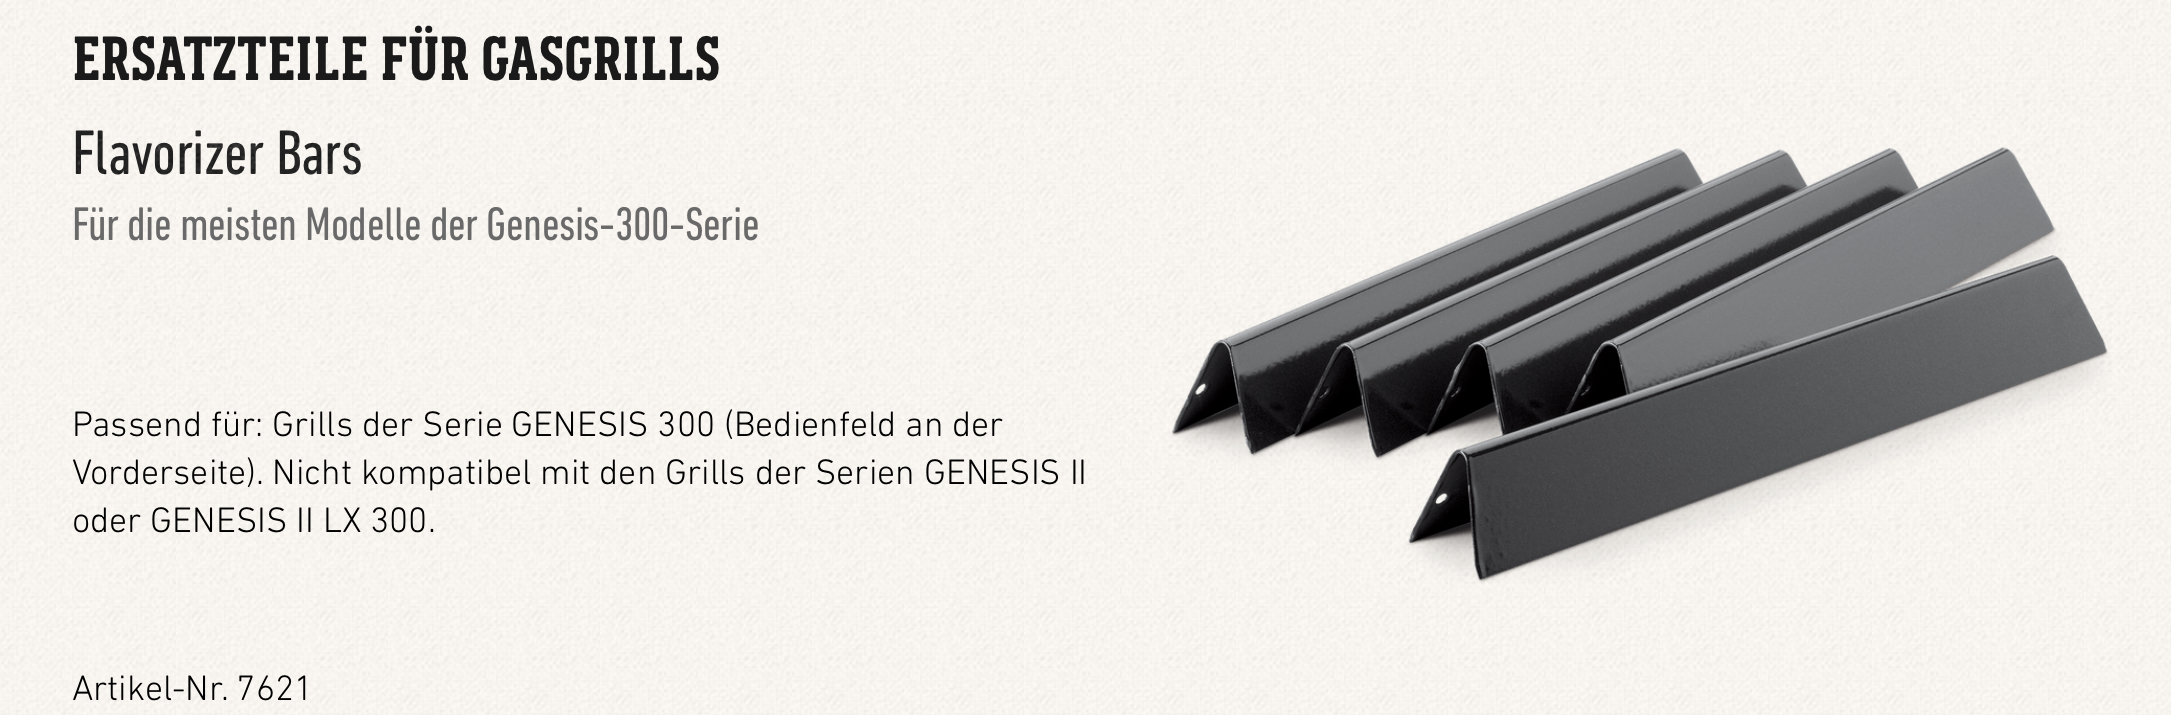 Weber Flavorizer Bars Genesis E-300 Serie (ab 2011), emailliert (5er Set)